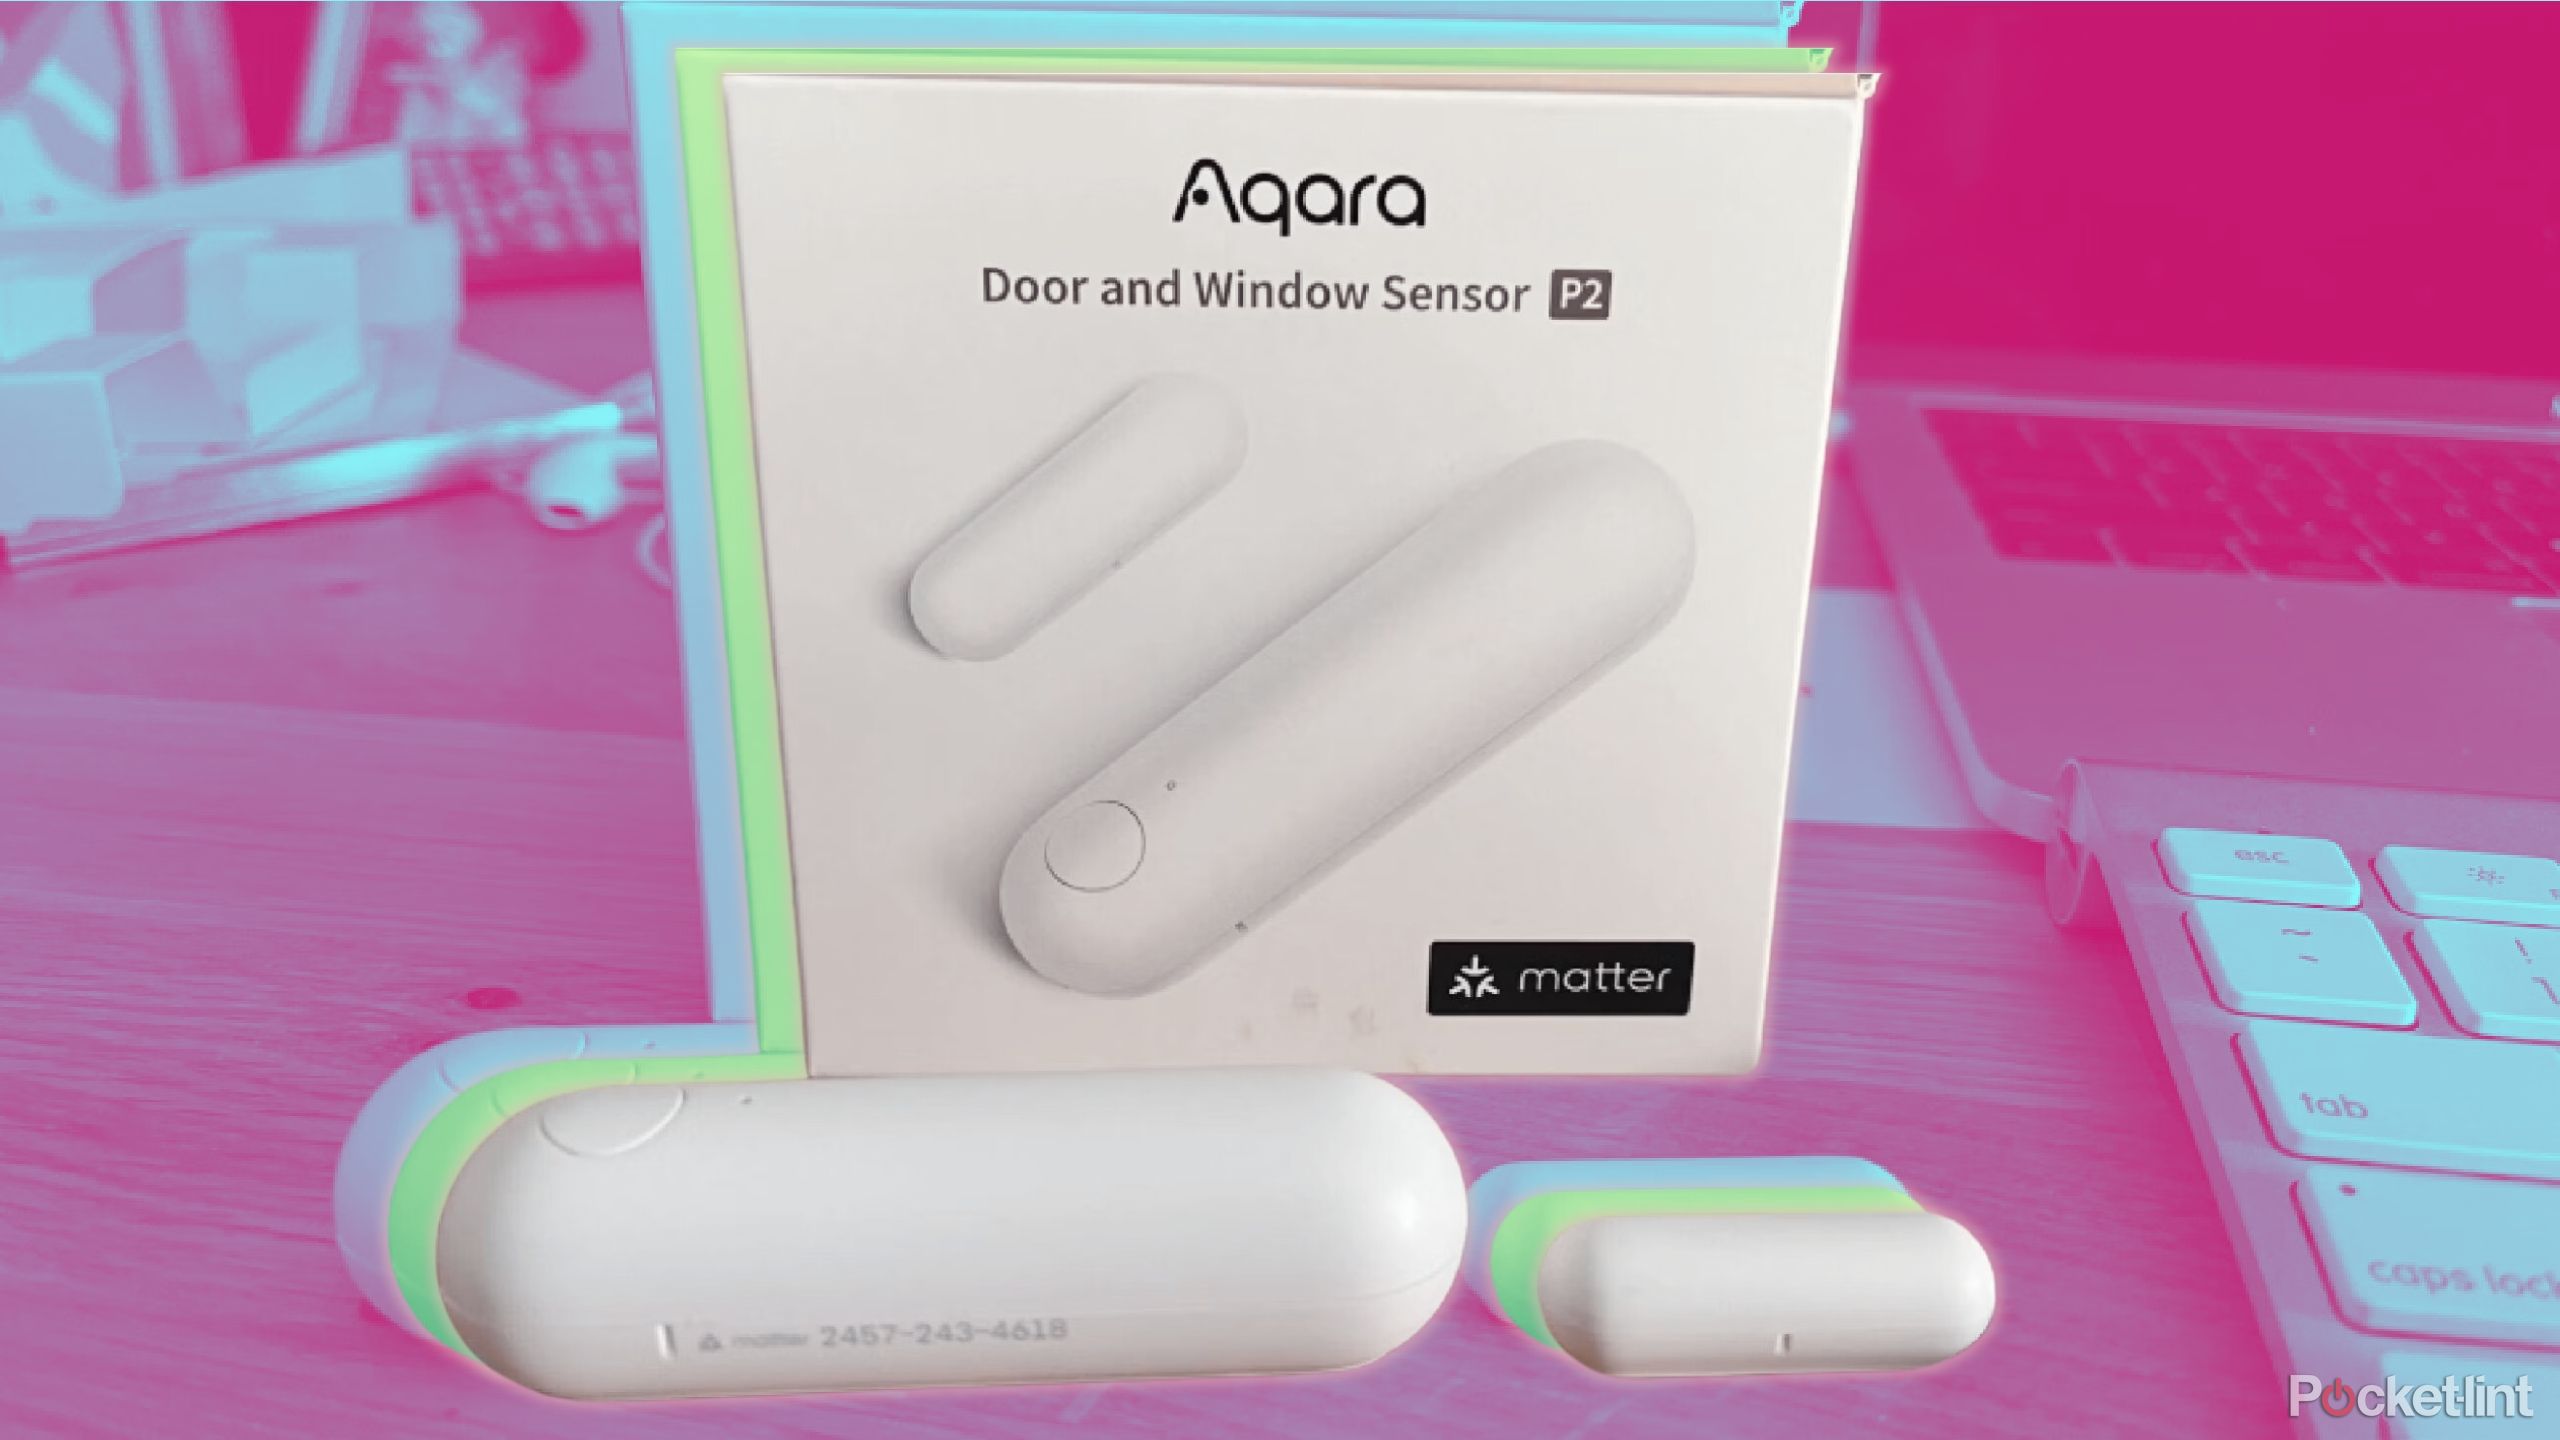 The Aara door and window sensor P2 in a box